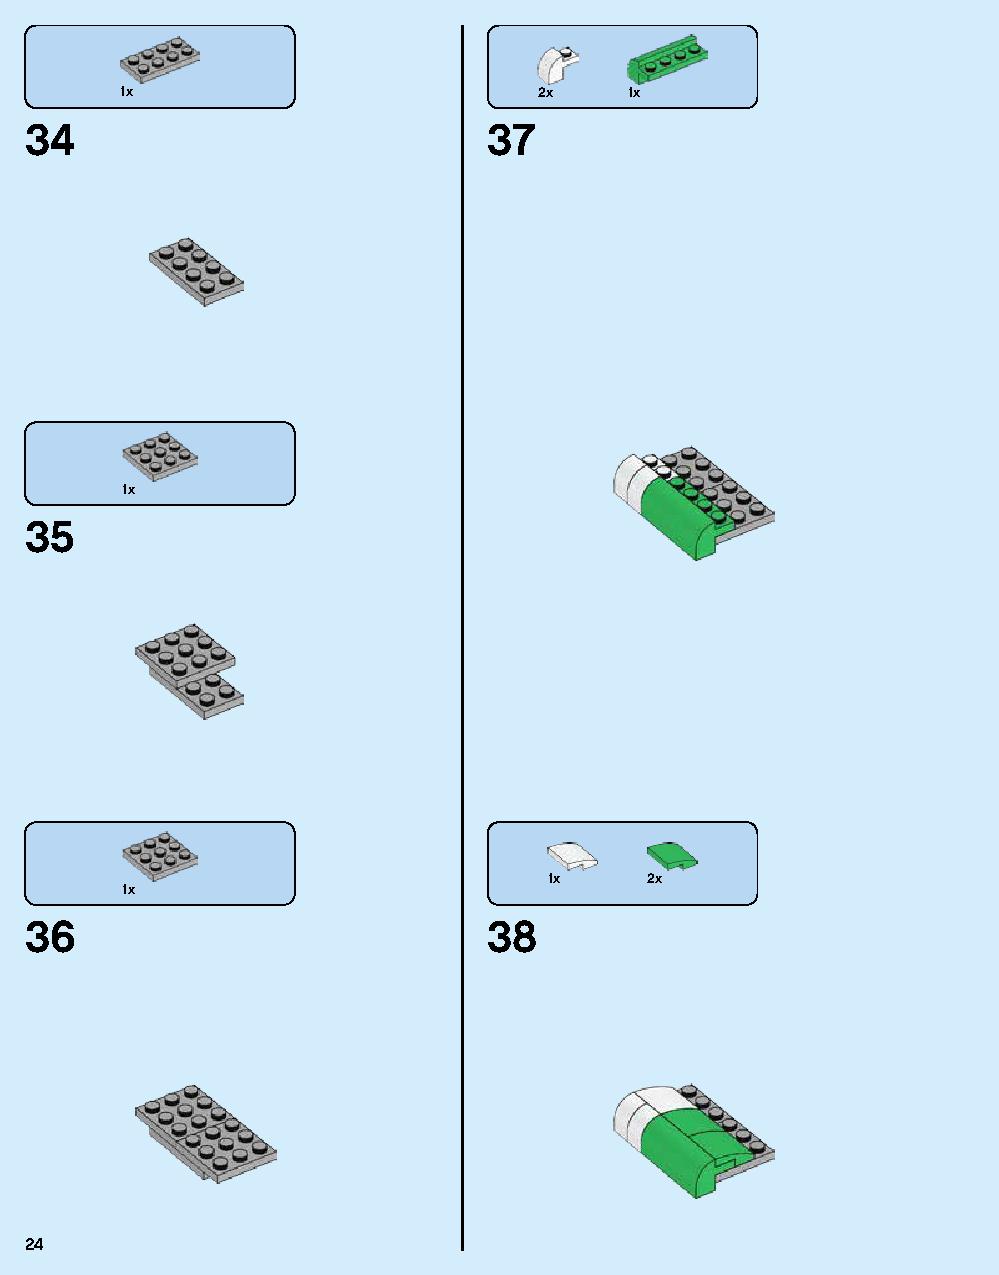 ニンジャゴー シティ 70620 レゴの商品情報 レゴの説明書・組立方法 24 page